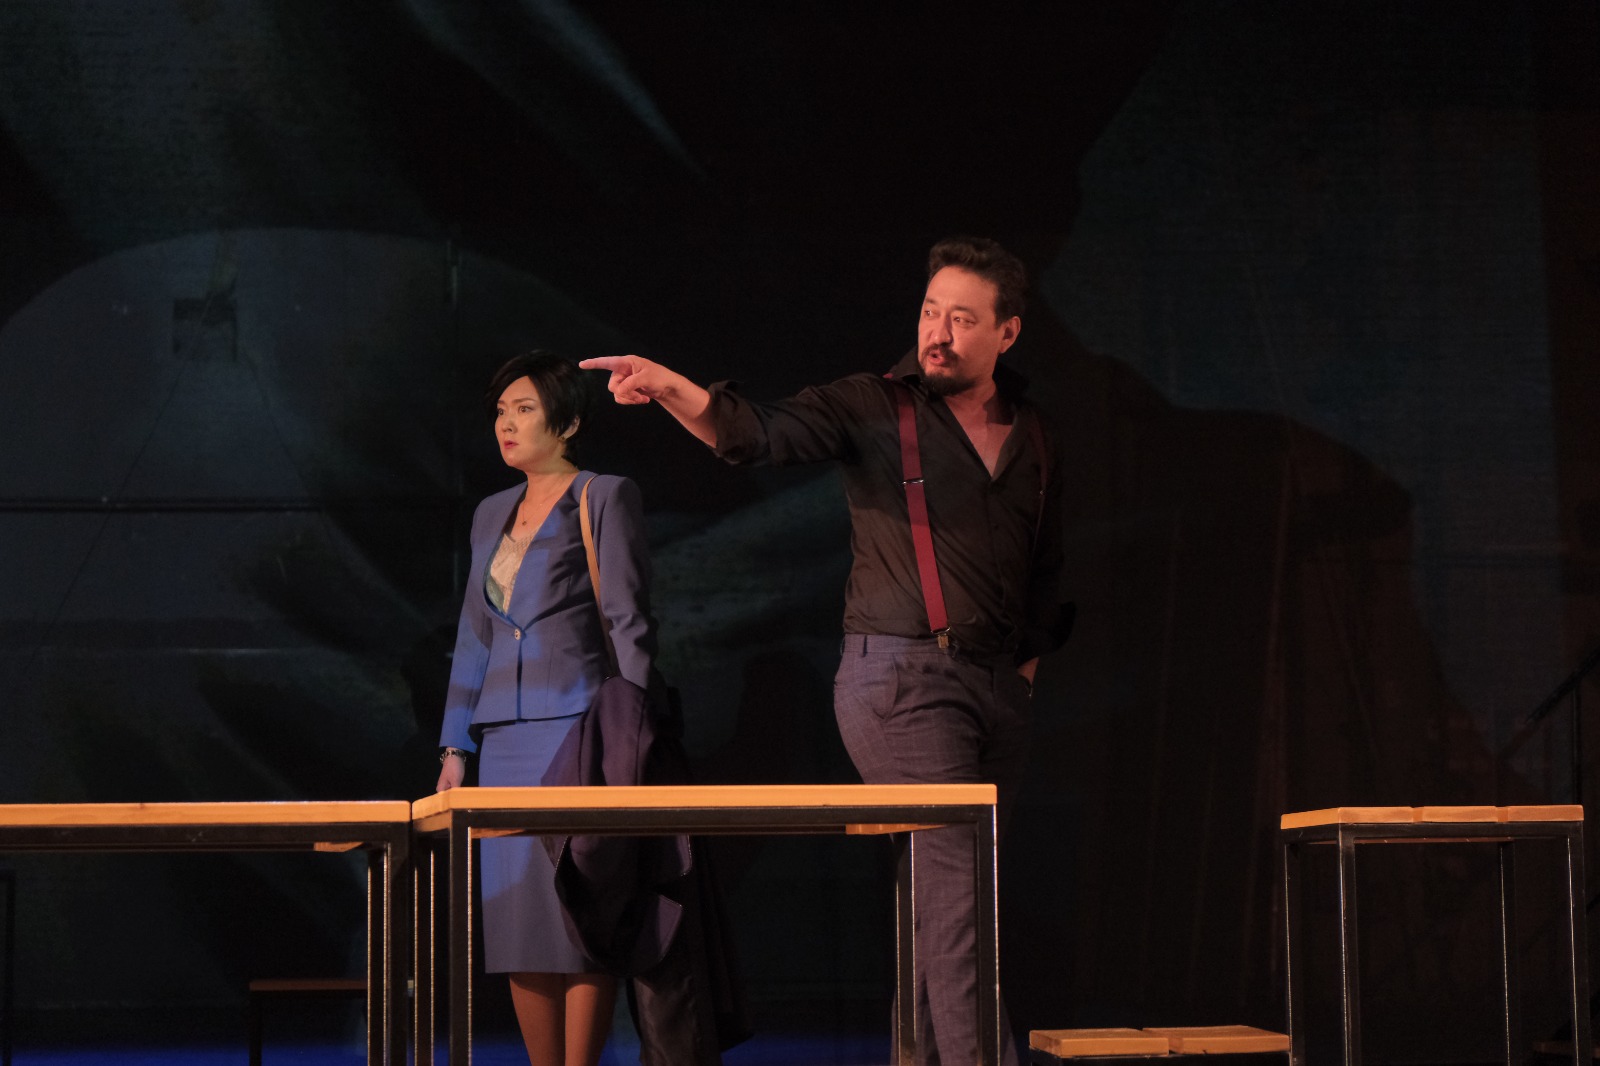 Вы сейчас просматриваете В Саха театре состоялась премьера первого современного спектакля по пьесе Александра Седалищева “Таптал сүппүт куората” (Город исчезающей любви).